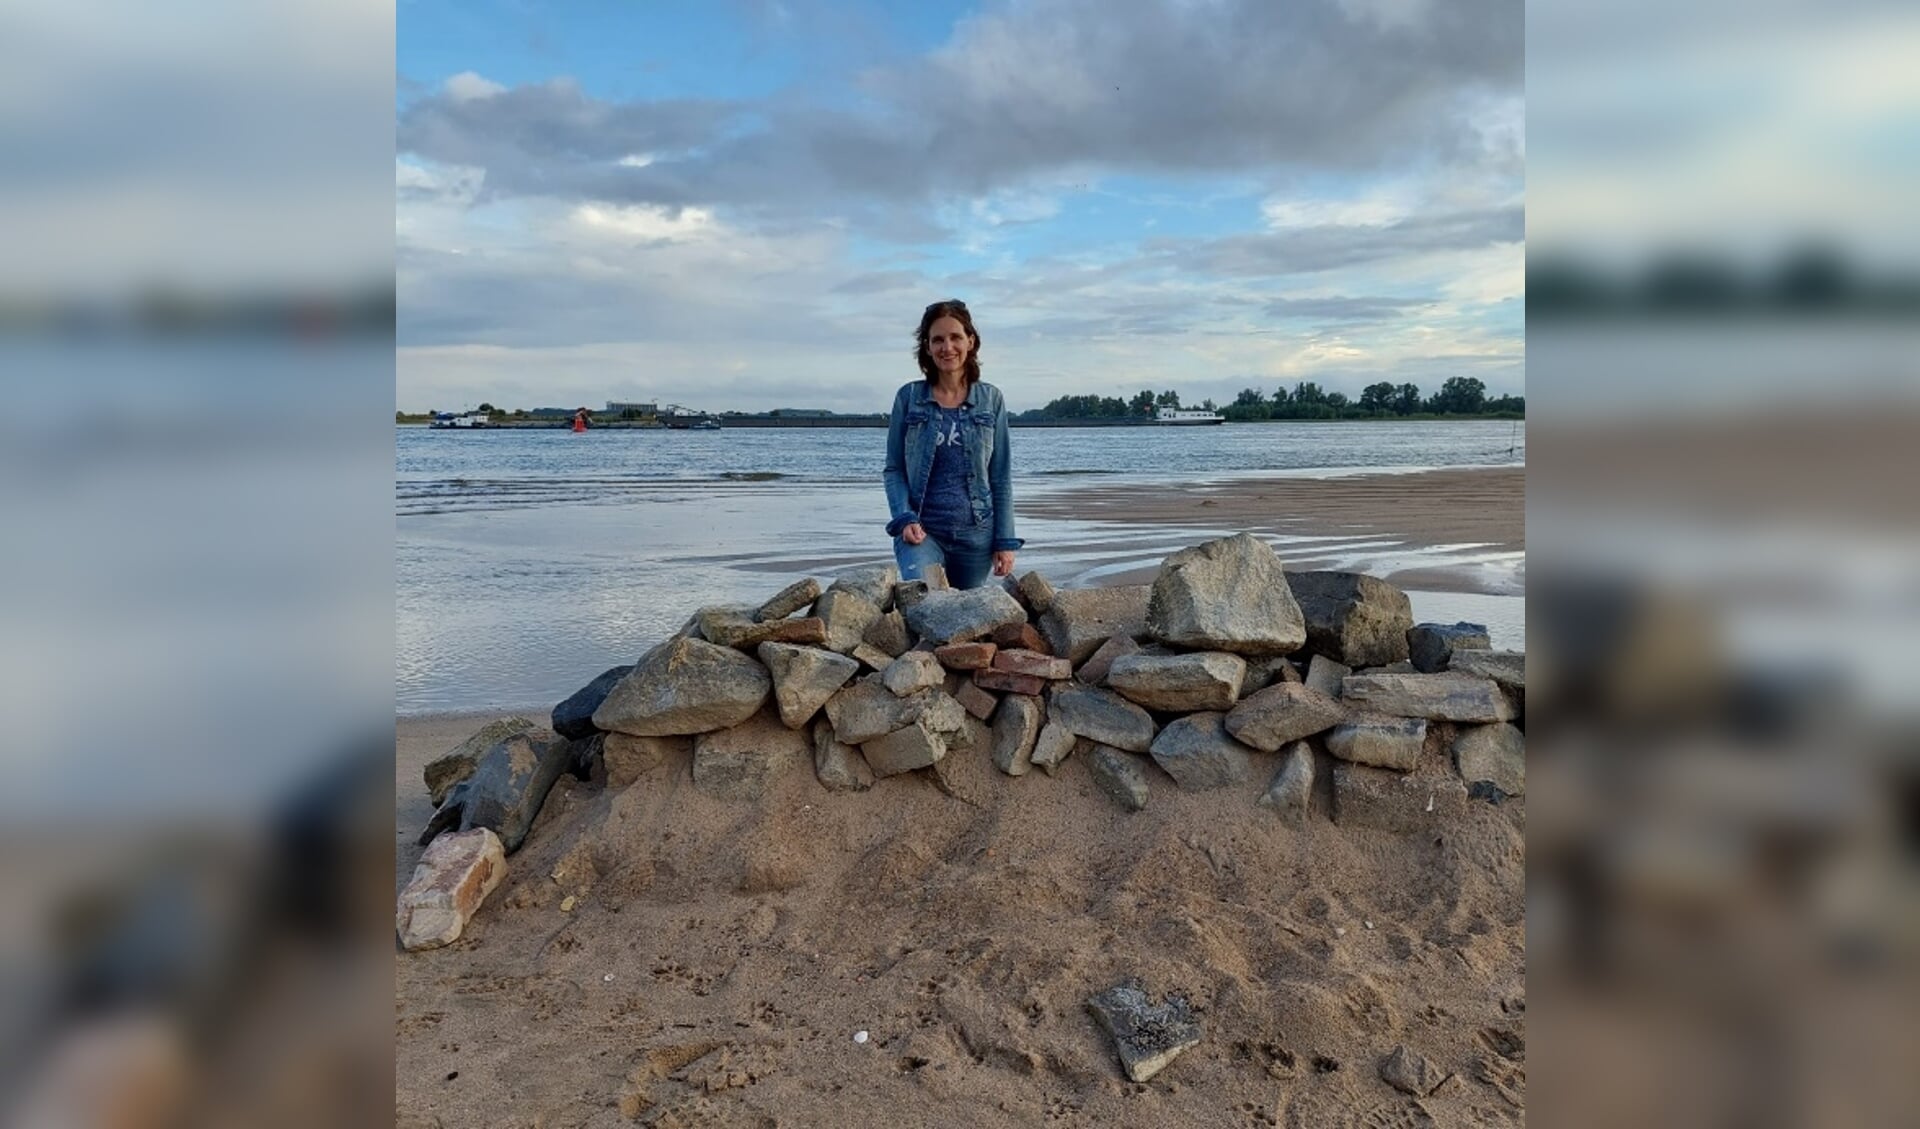 Annette bij de rivier de Waal, vlakbij de steenfabriek.